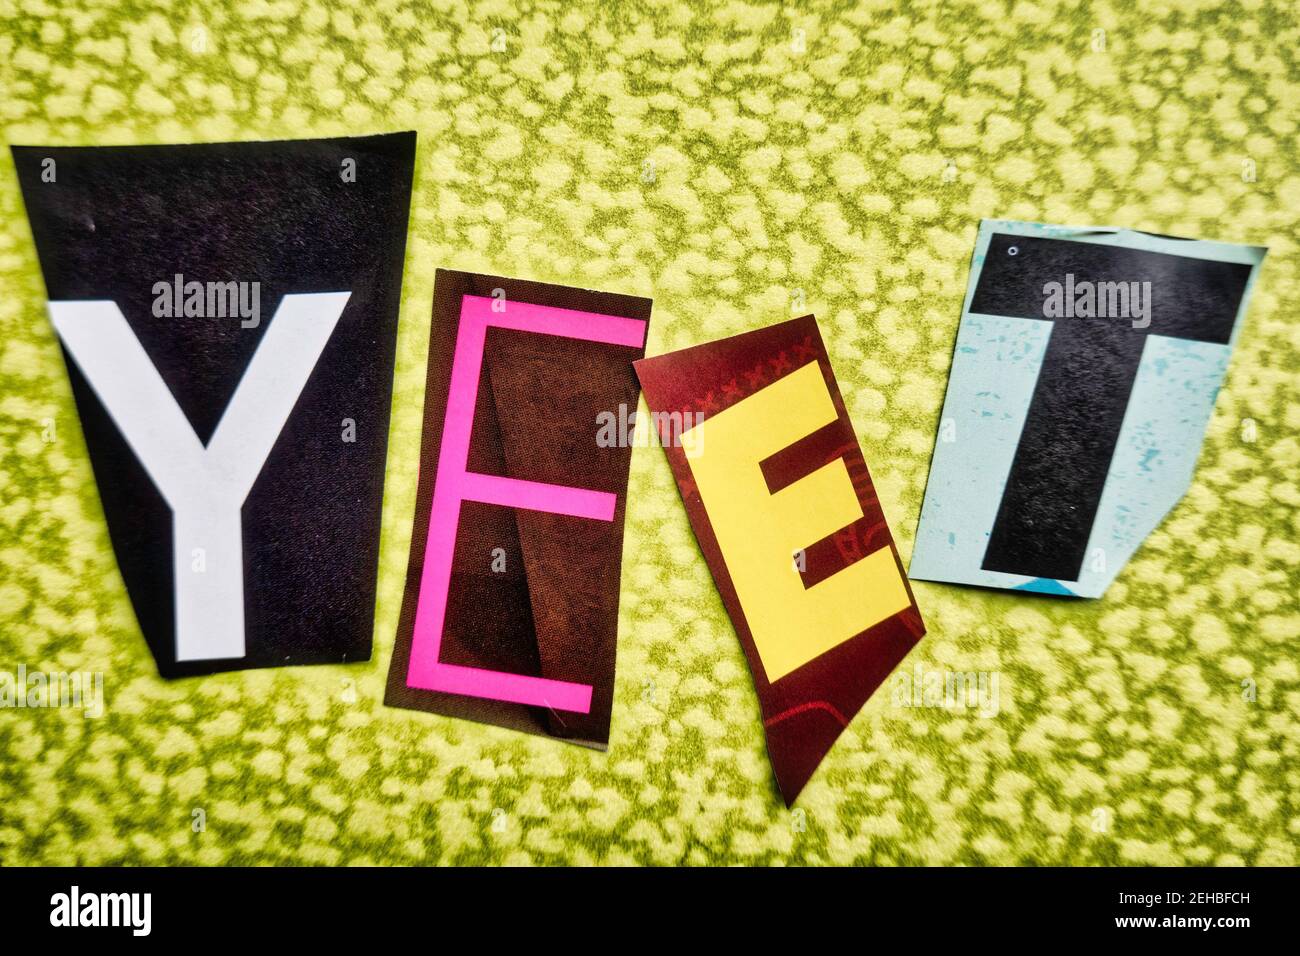 El acrónimo 'YEET' usando letras de papel recortadas en la tipografía del efecto de nota de rescate, USA Foto de stock